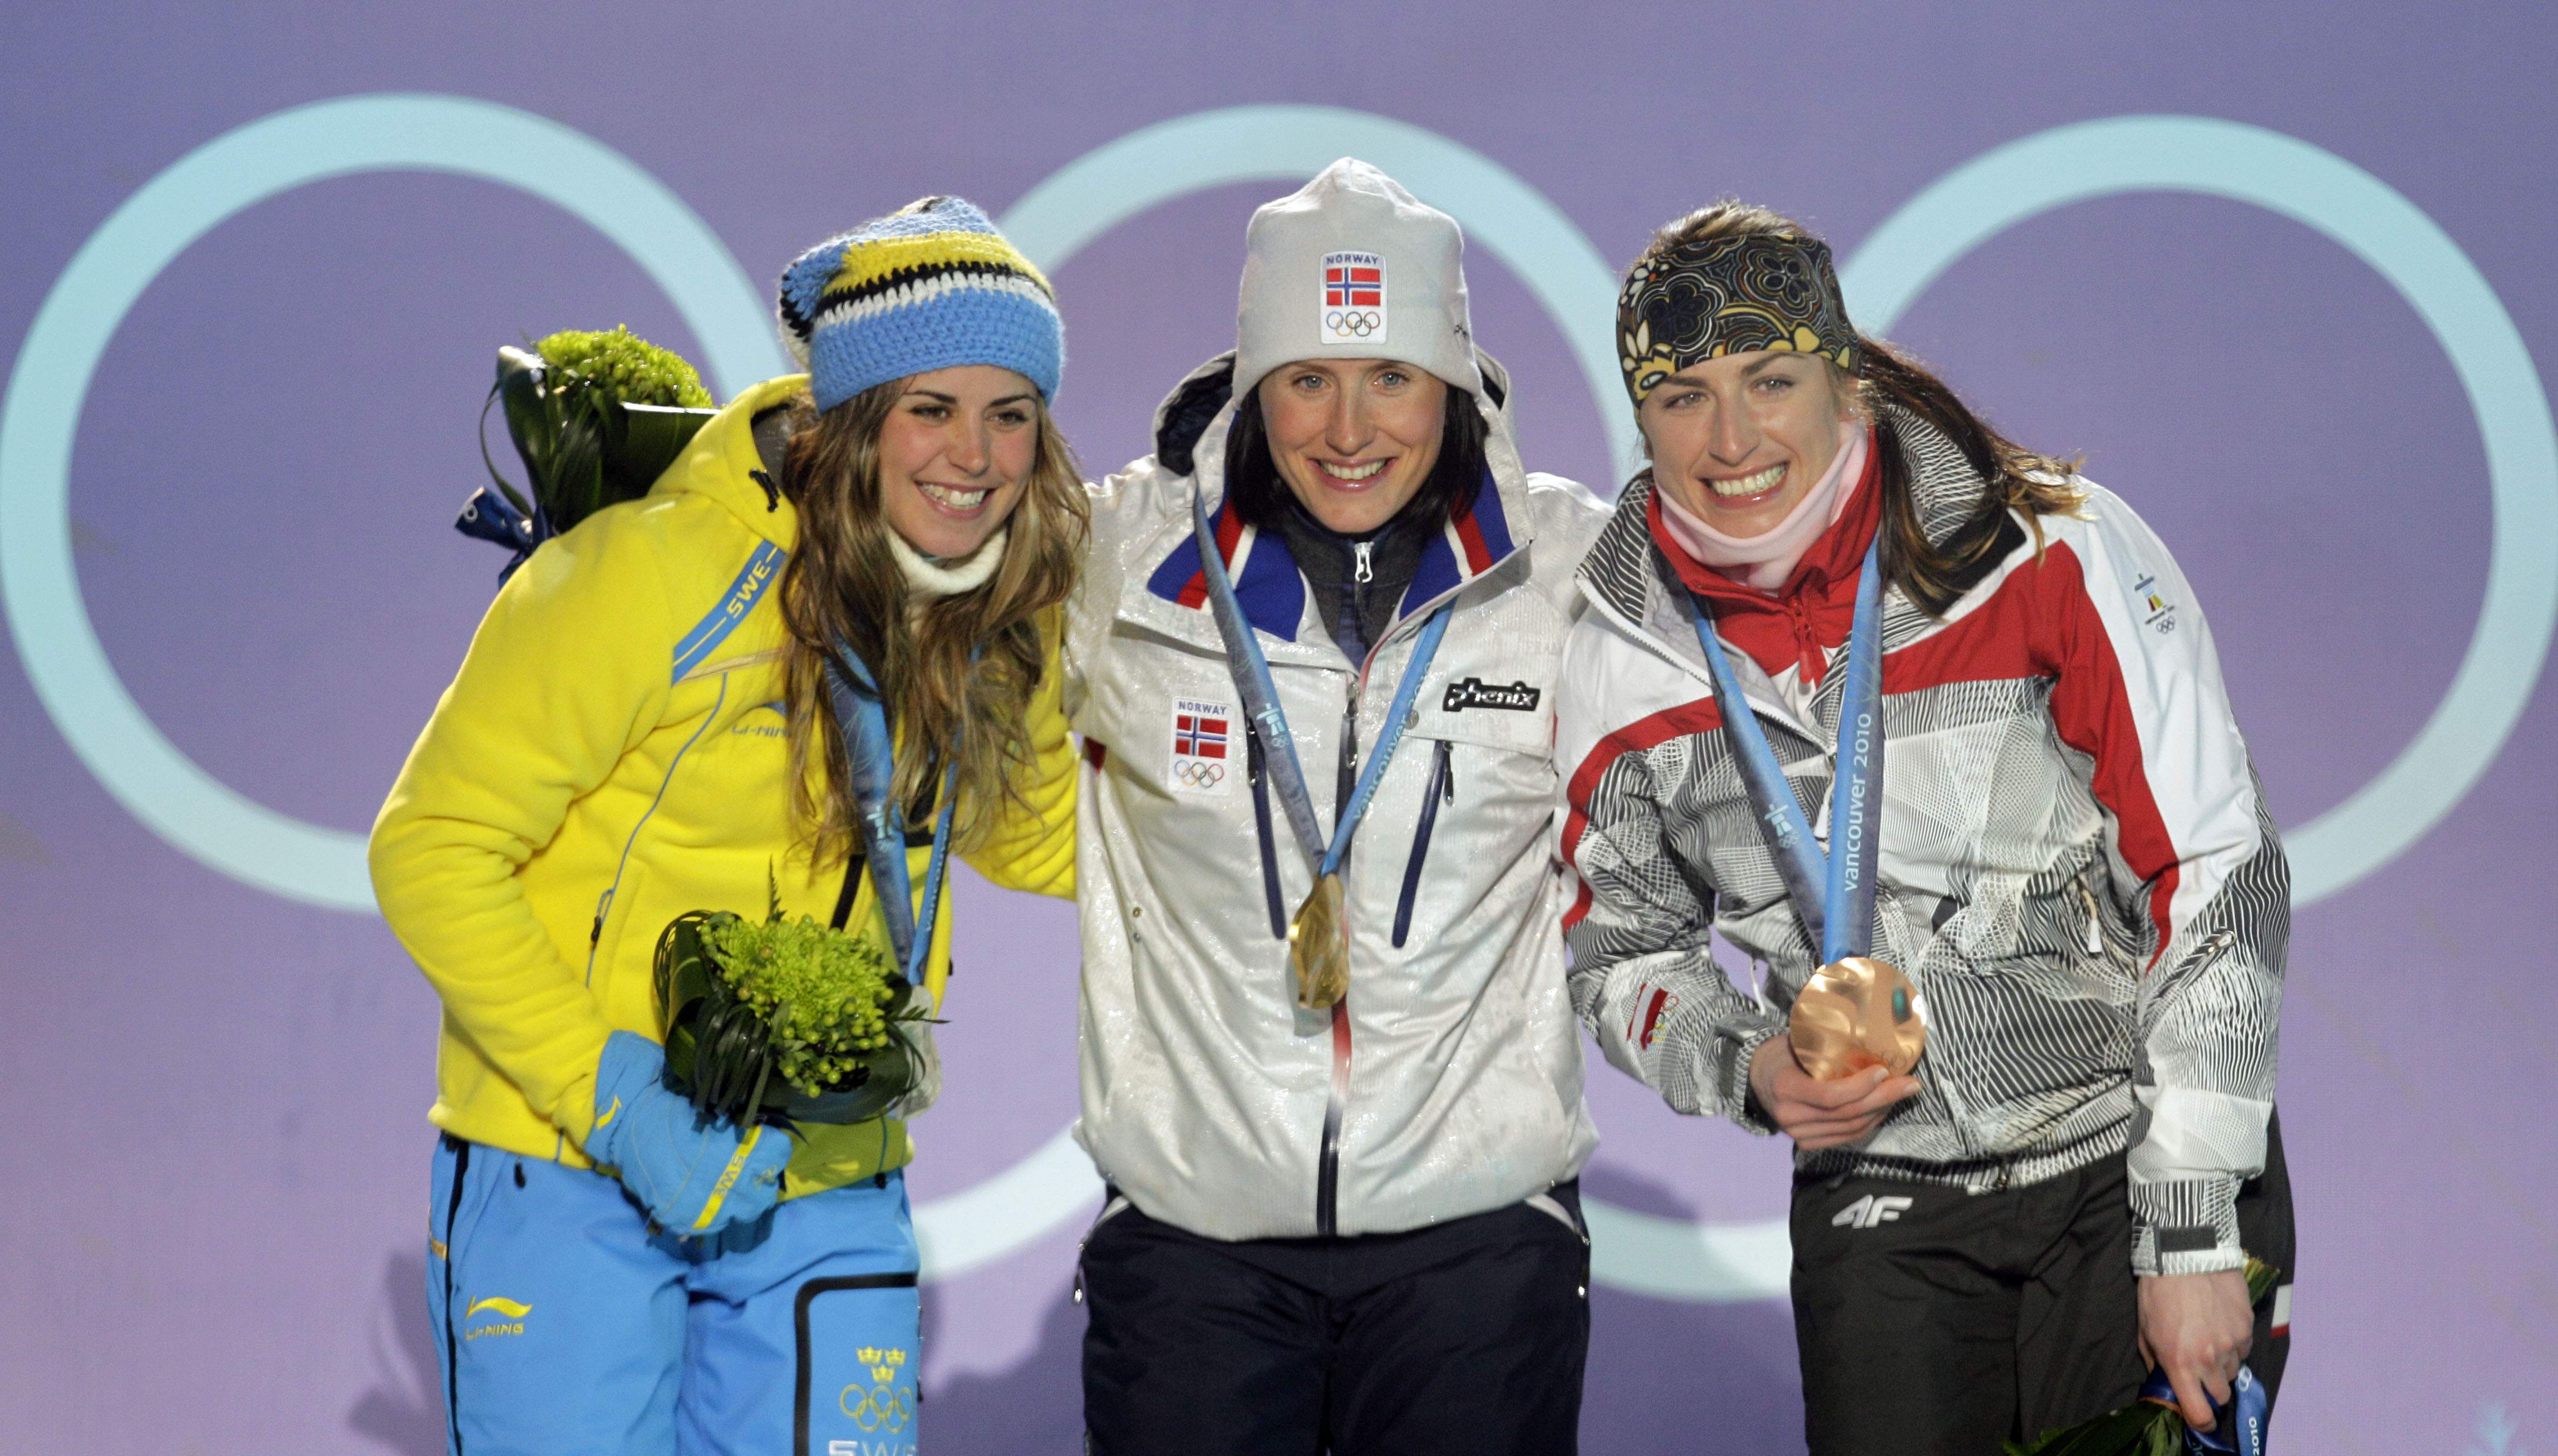 Doping, Justyna Kowalczyk, Skidåkning, Olympiska spelen, Charlotte Kalla, Marit Björgen